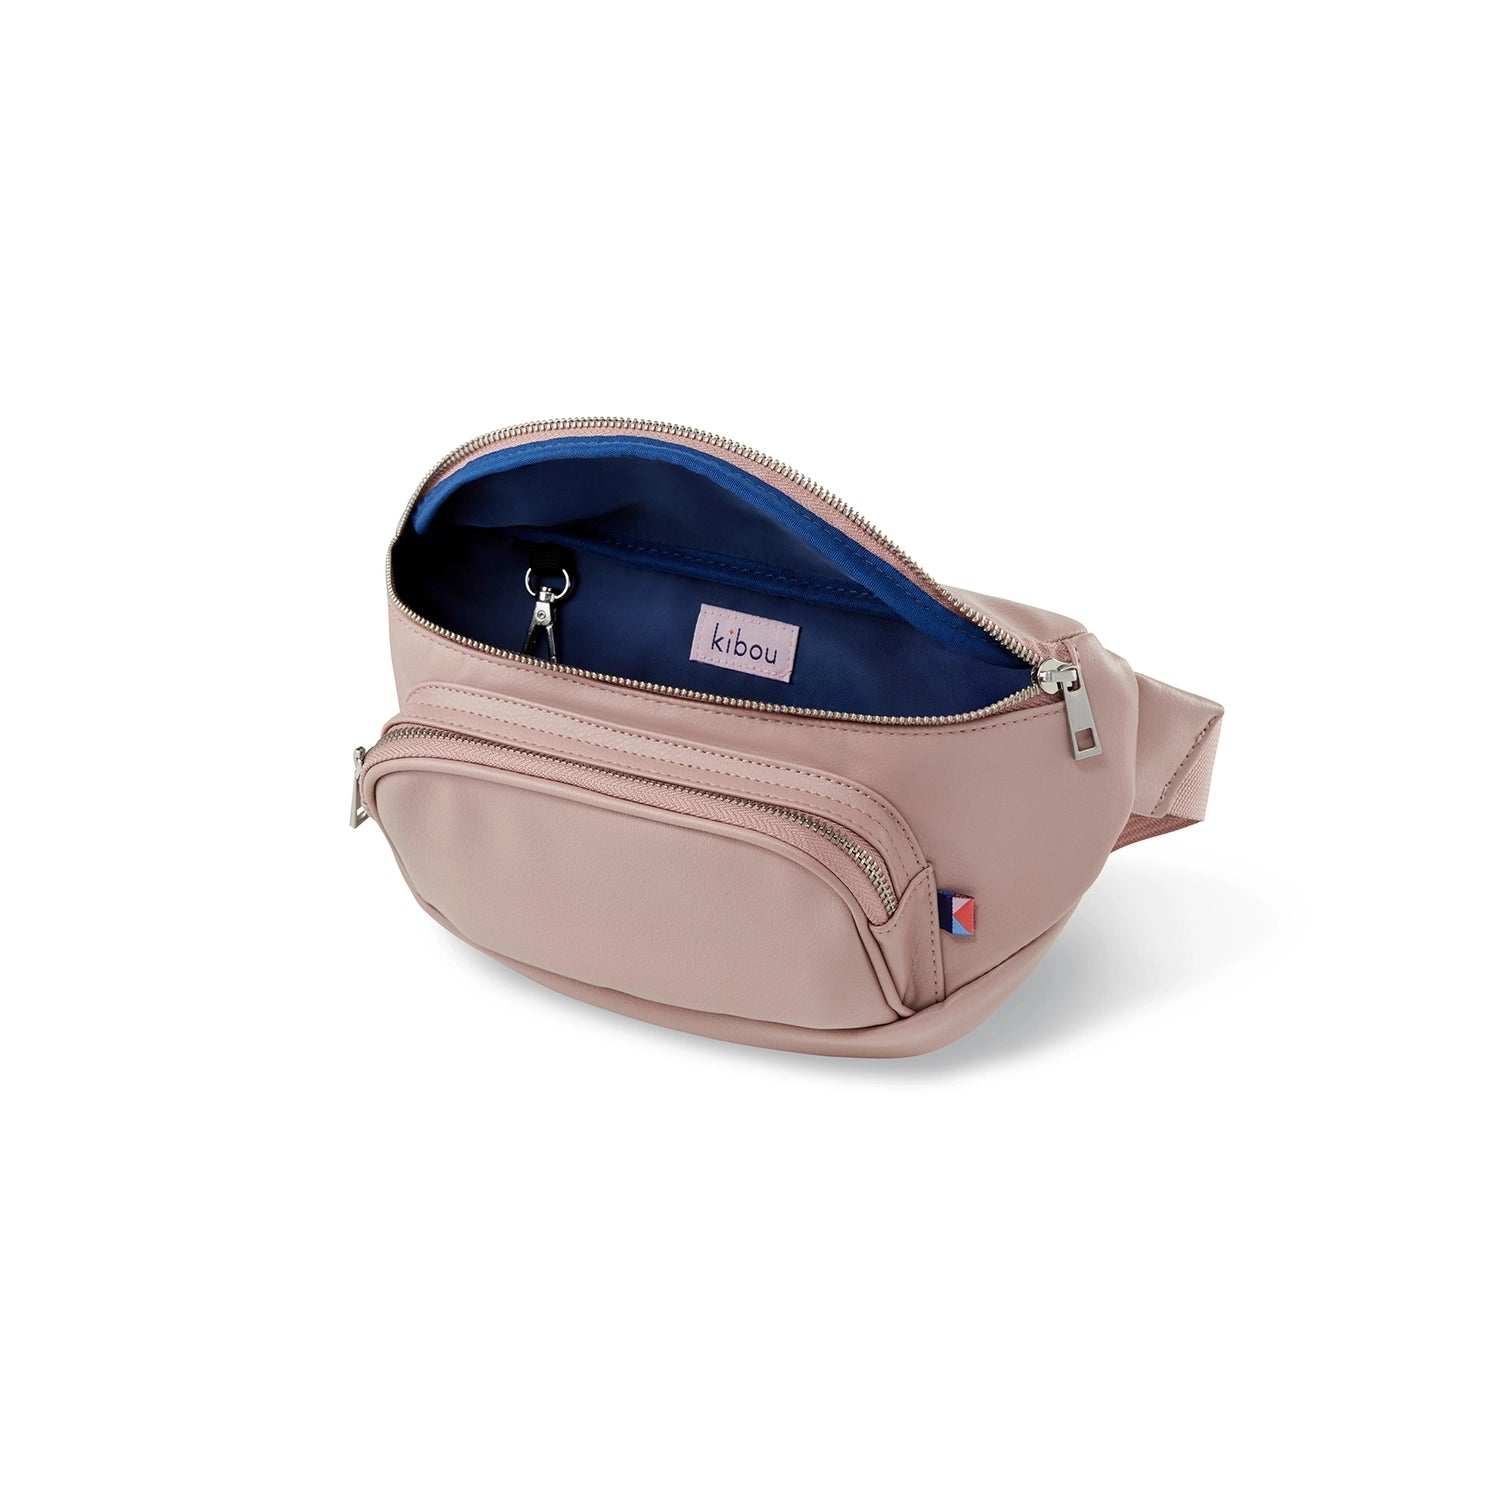 Kibou Diaper Bag Belt Bag - Blush